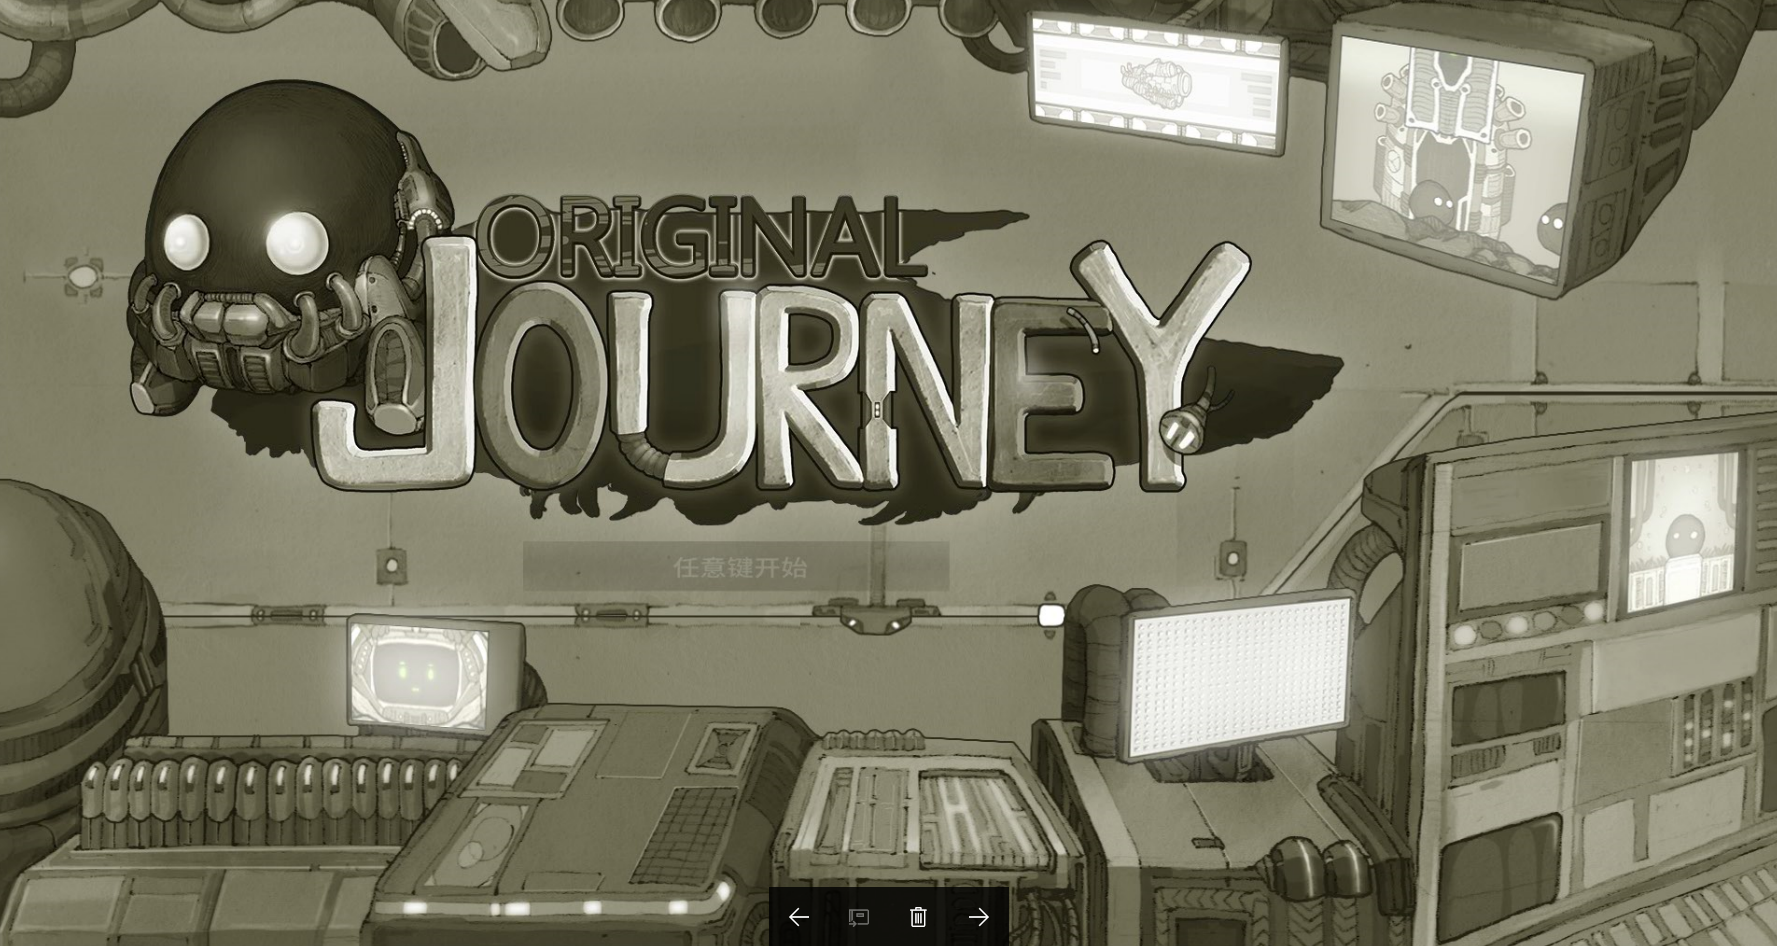 原始旅程 Original Journey游戏评测20170809001